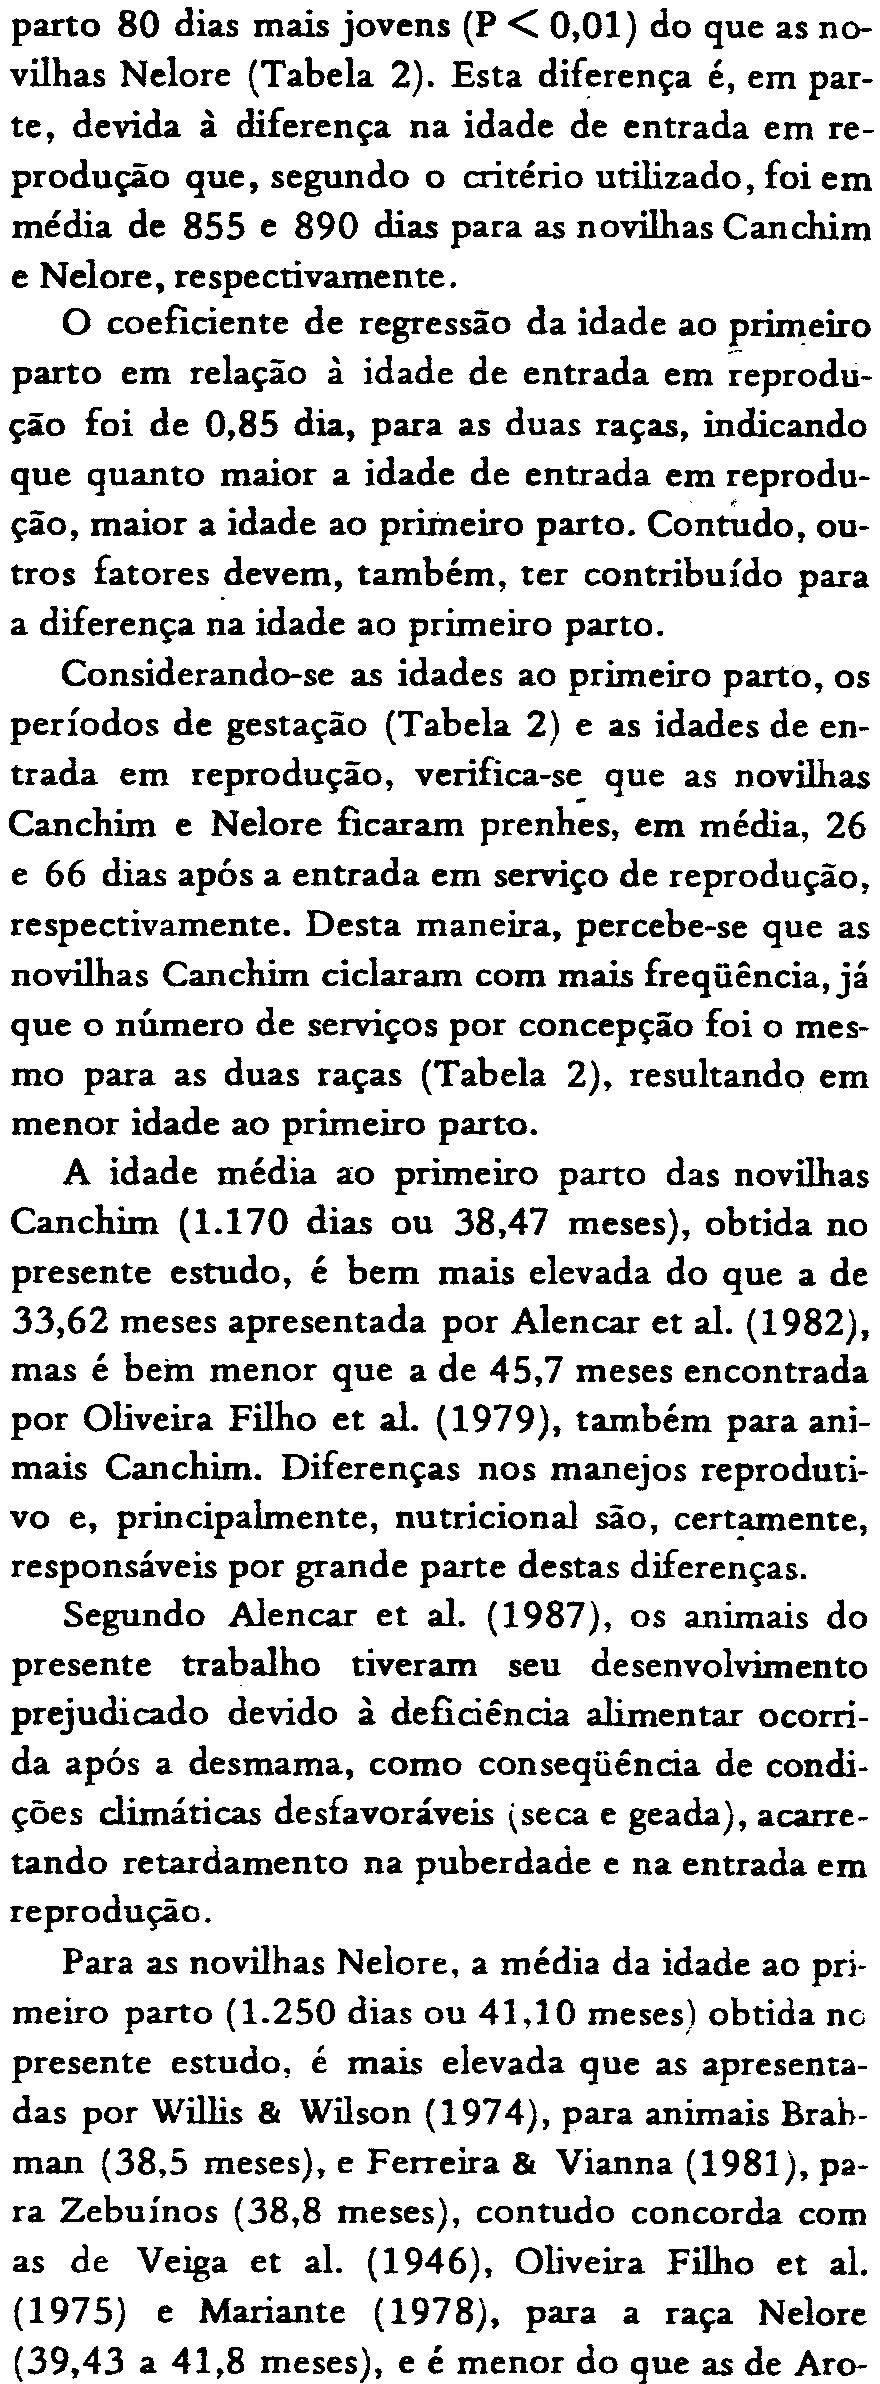 Esta diferença de peso é conseqüência do maior desenvolvimento das novilhas Canchim, corno foi observado por Alencar et ai. (19~6).